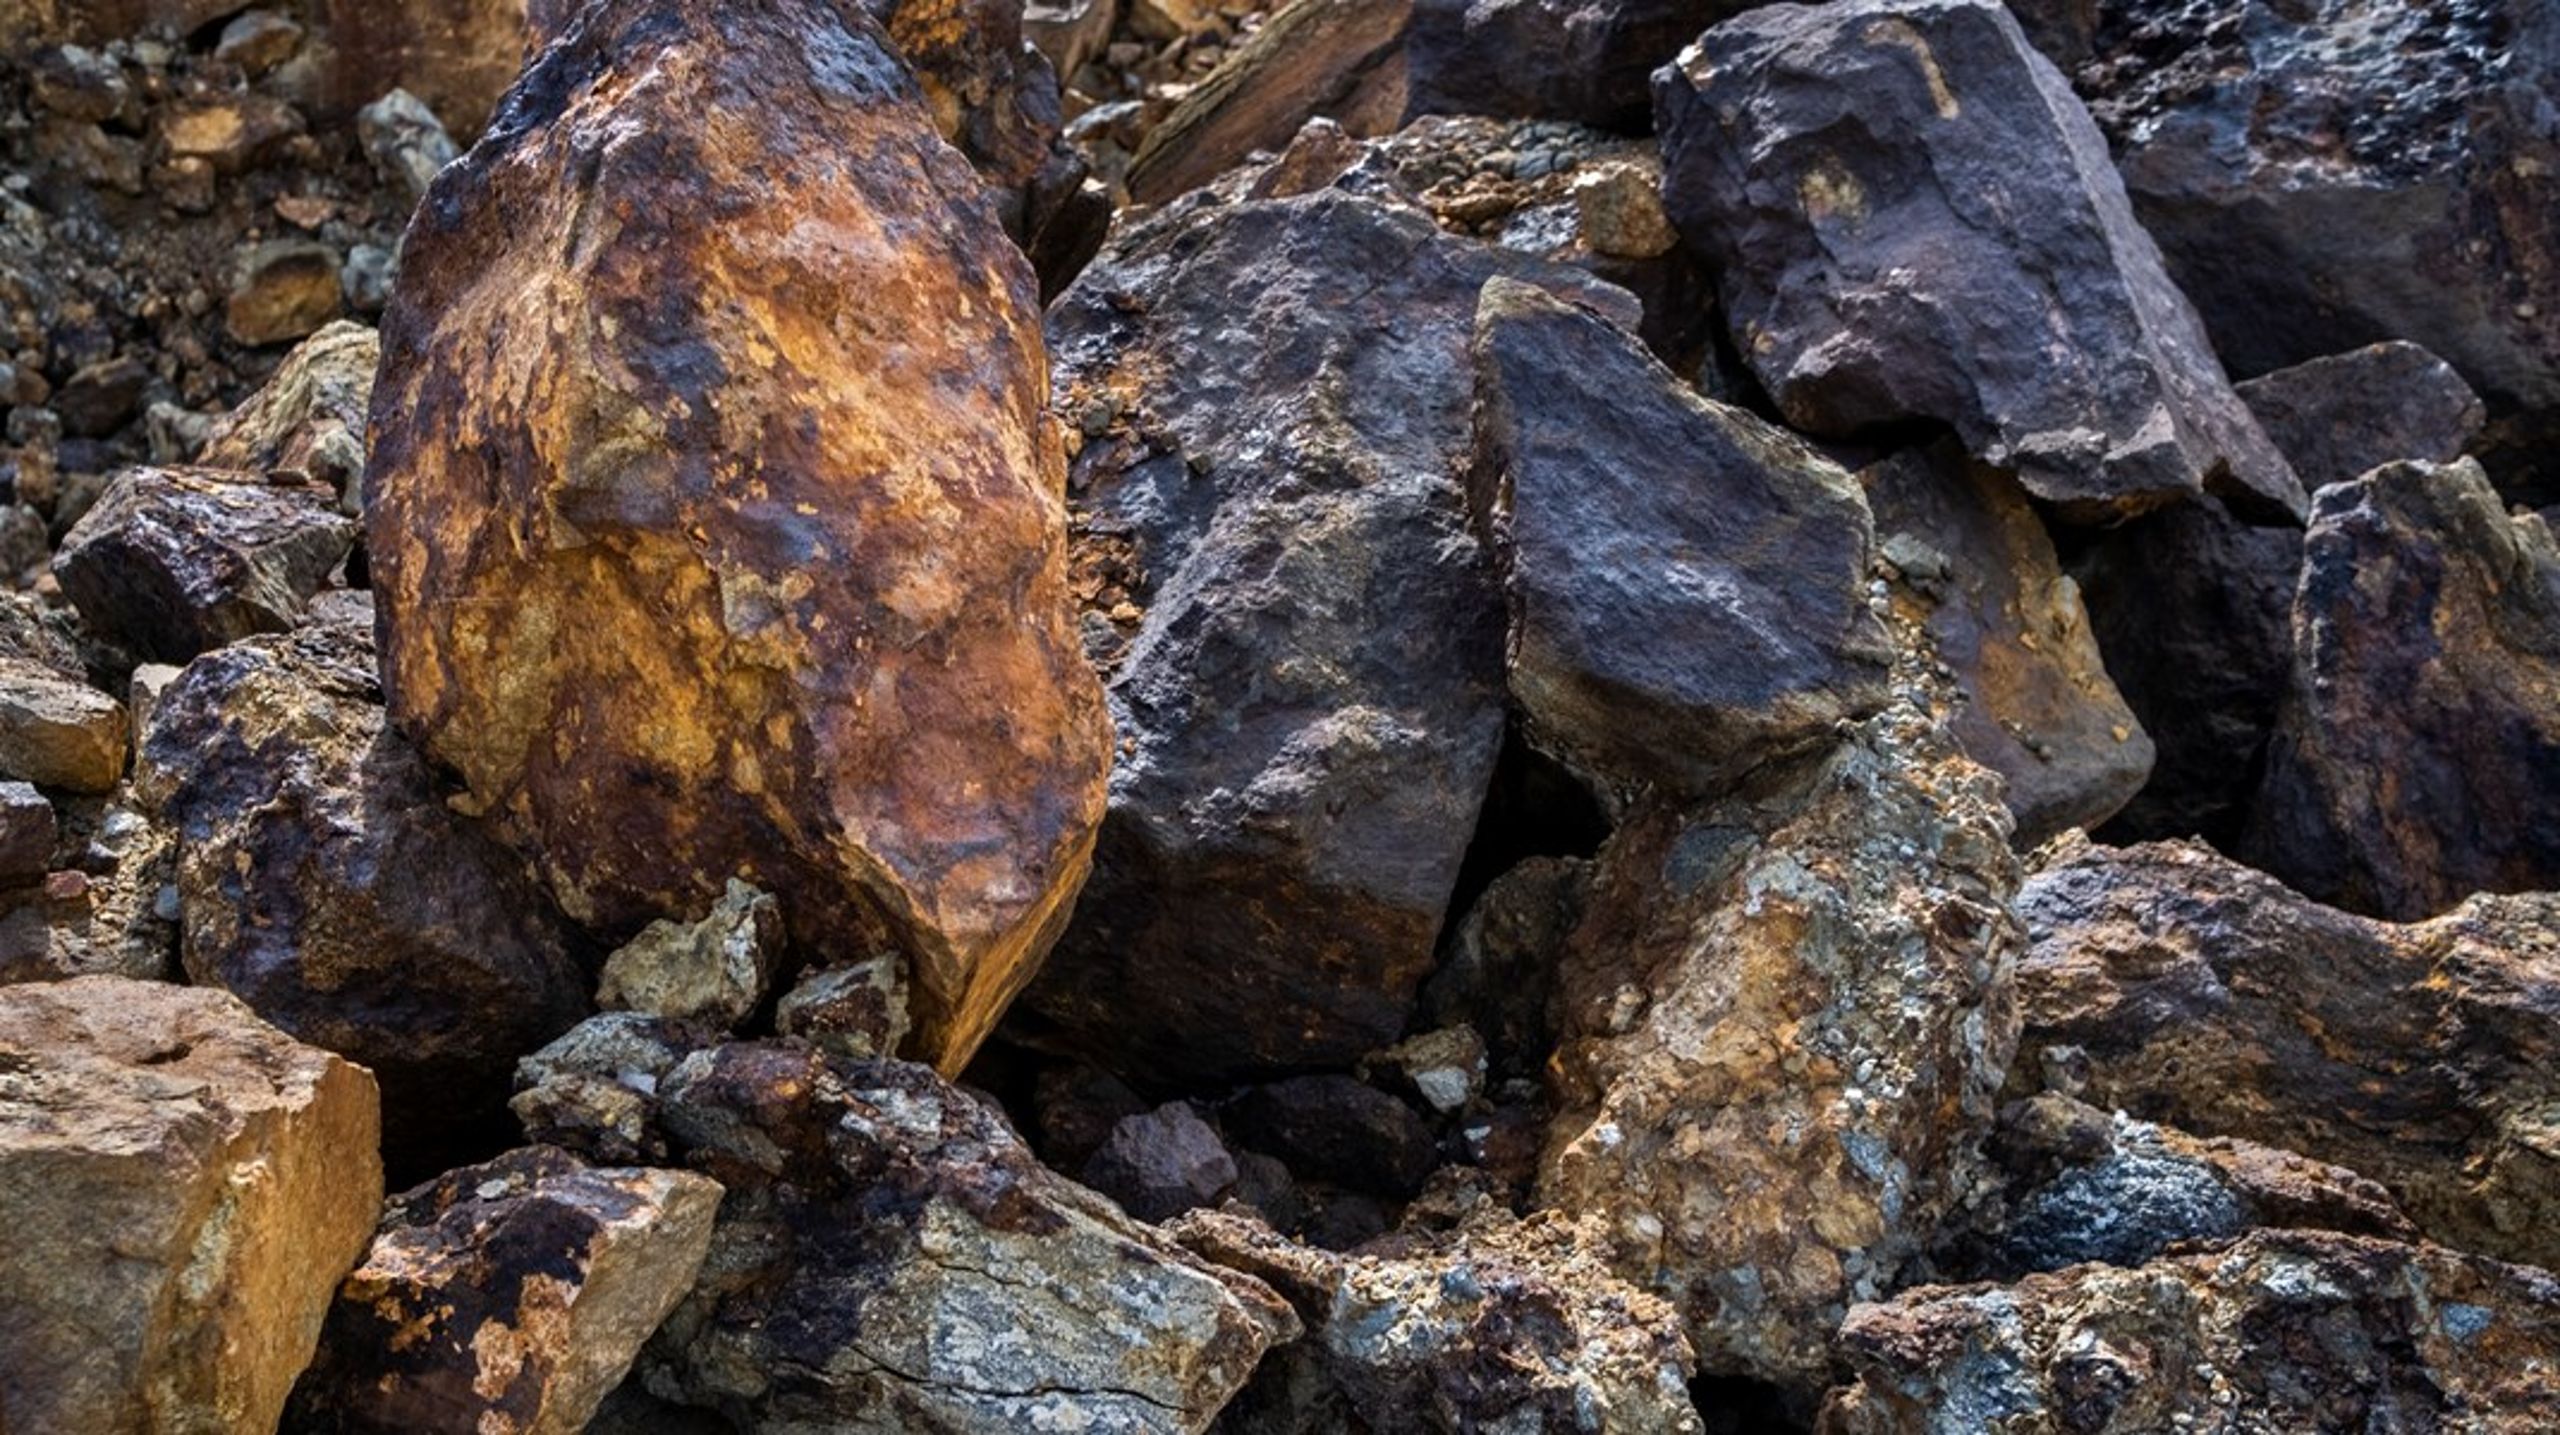 ”Problemet är att minerallagen inte ger utrymme för några andra intressen än gruvindustrins när undersökningstillstånd utfärdas och processen för gruvbrytning inleds.”